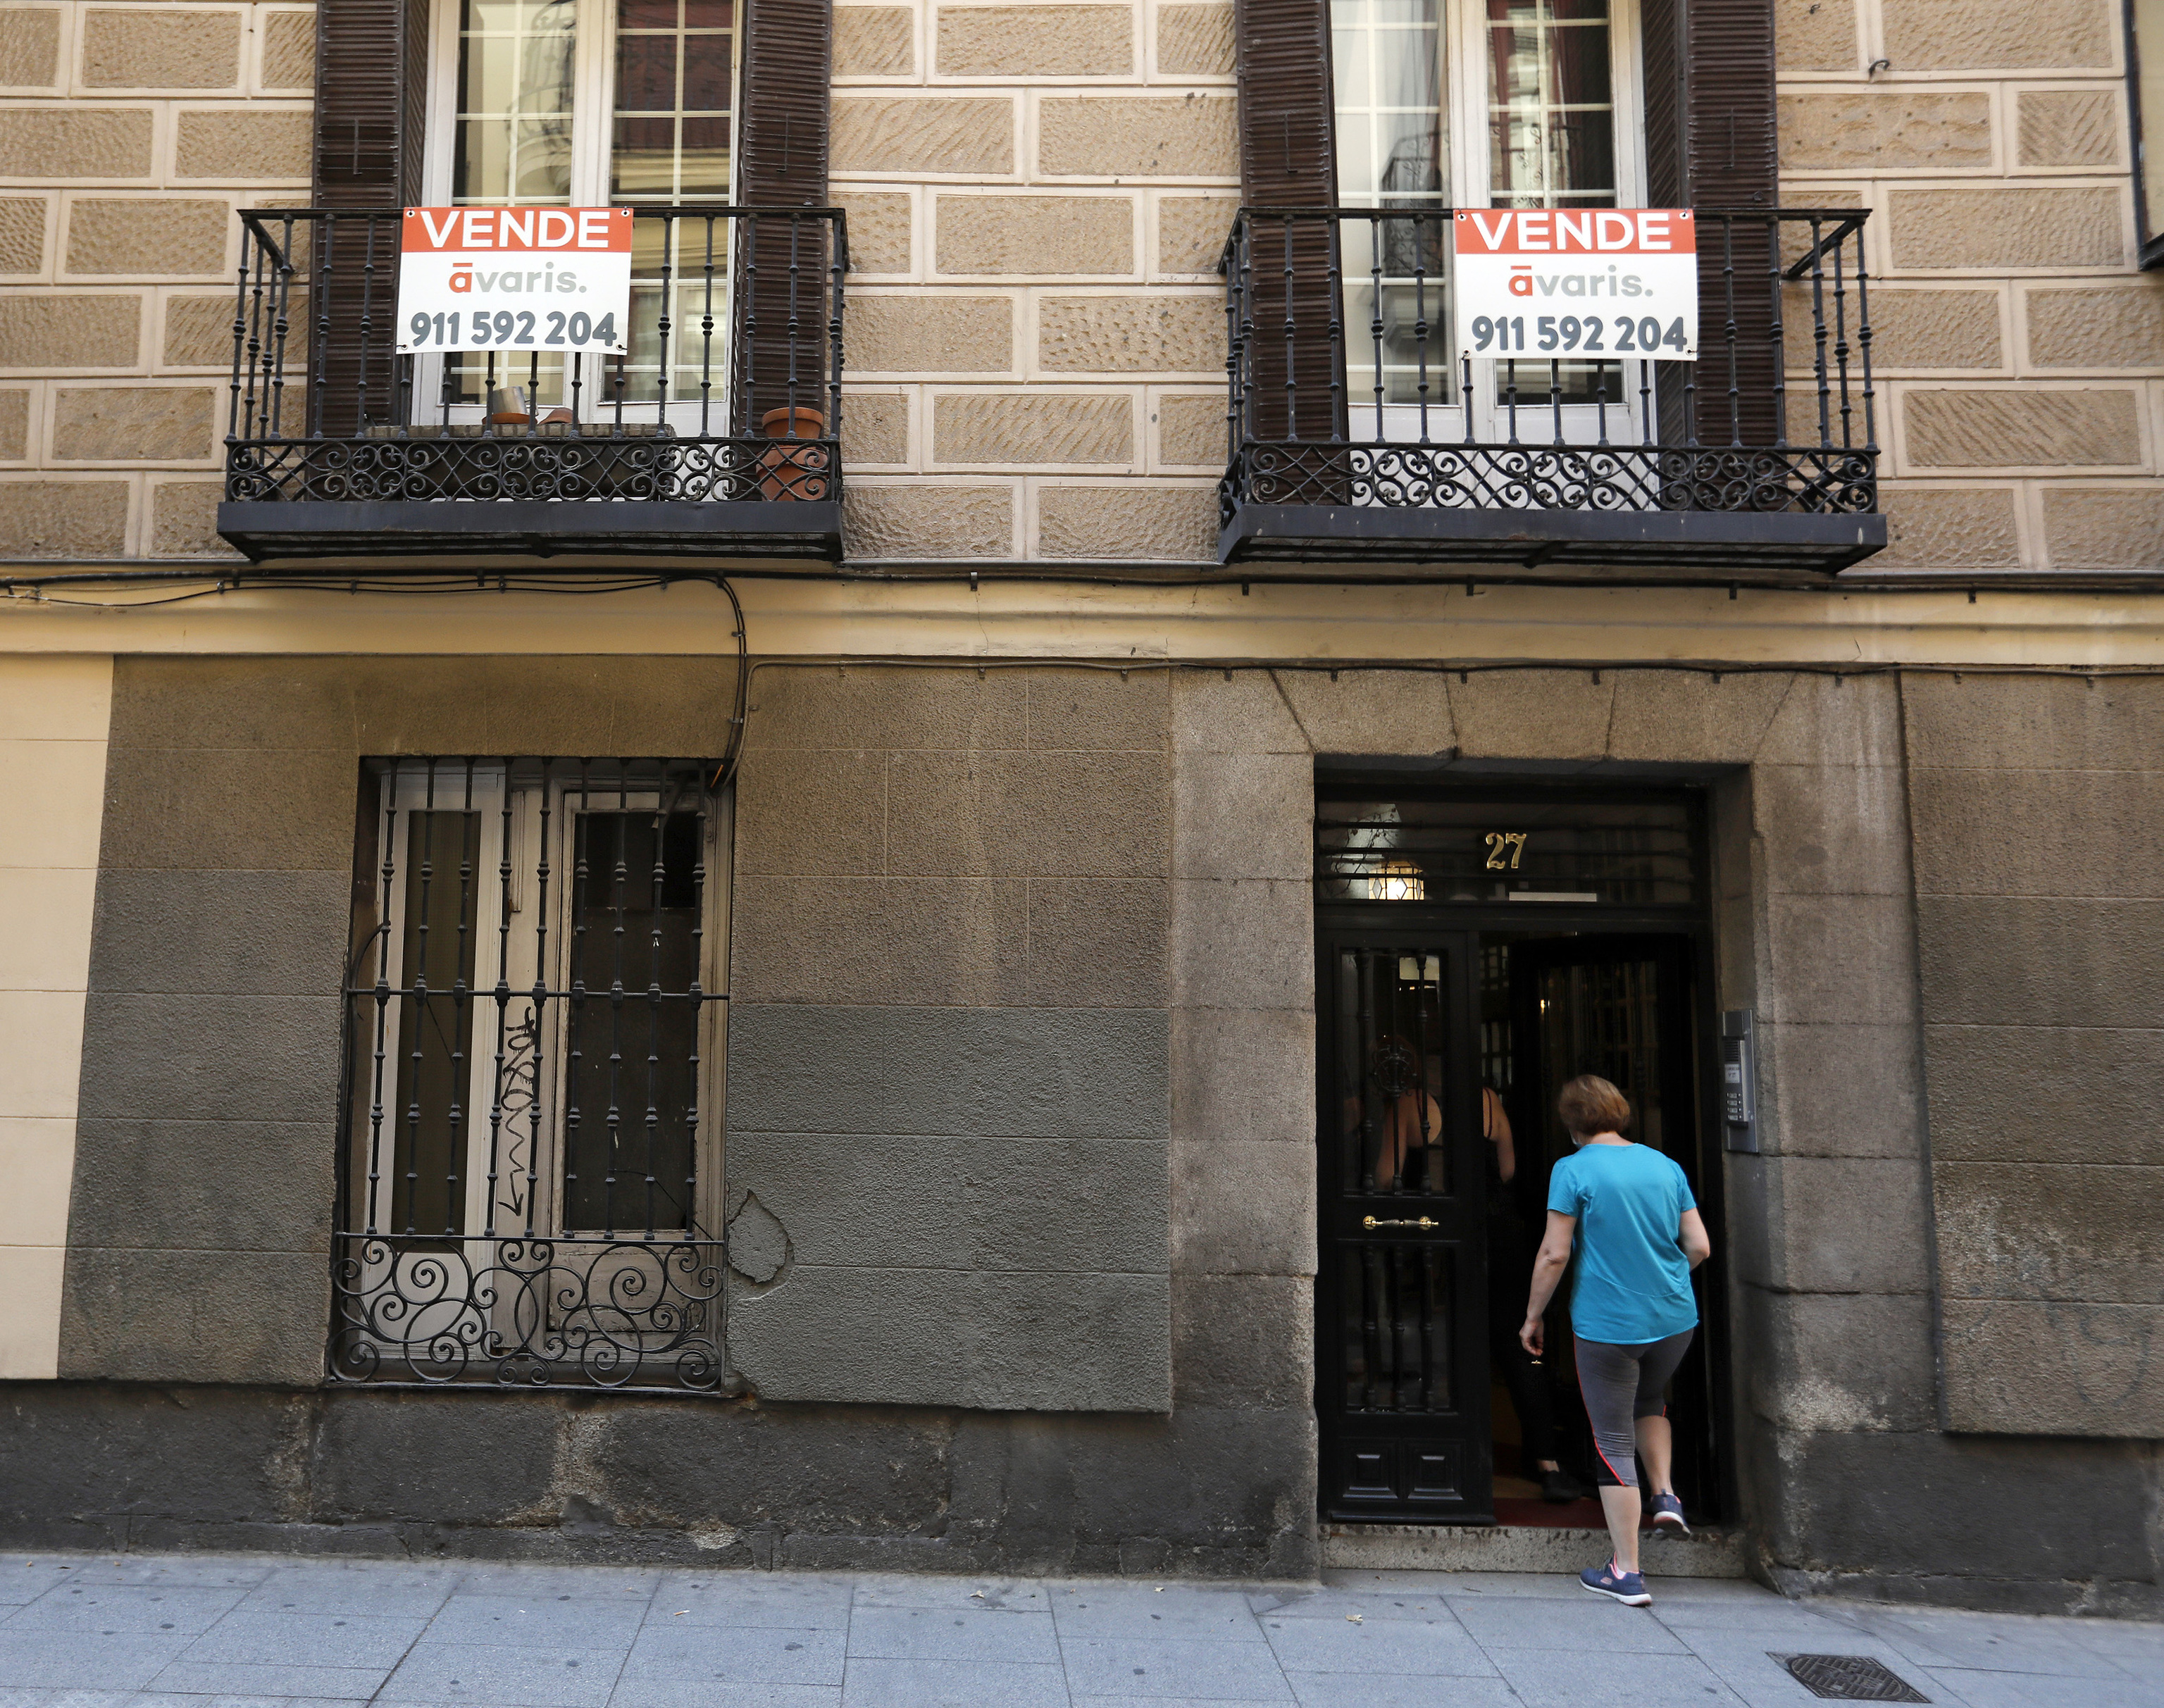 Carteles de se vende y se alquila en un bloque de viviendas en Madrid.